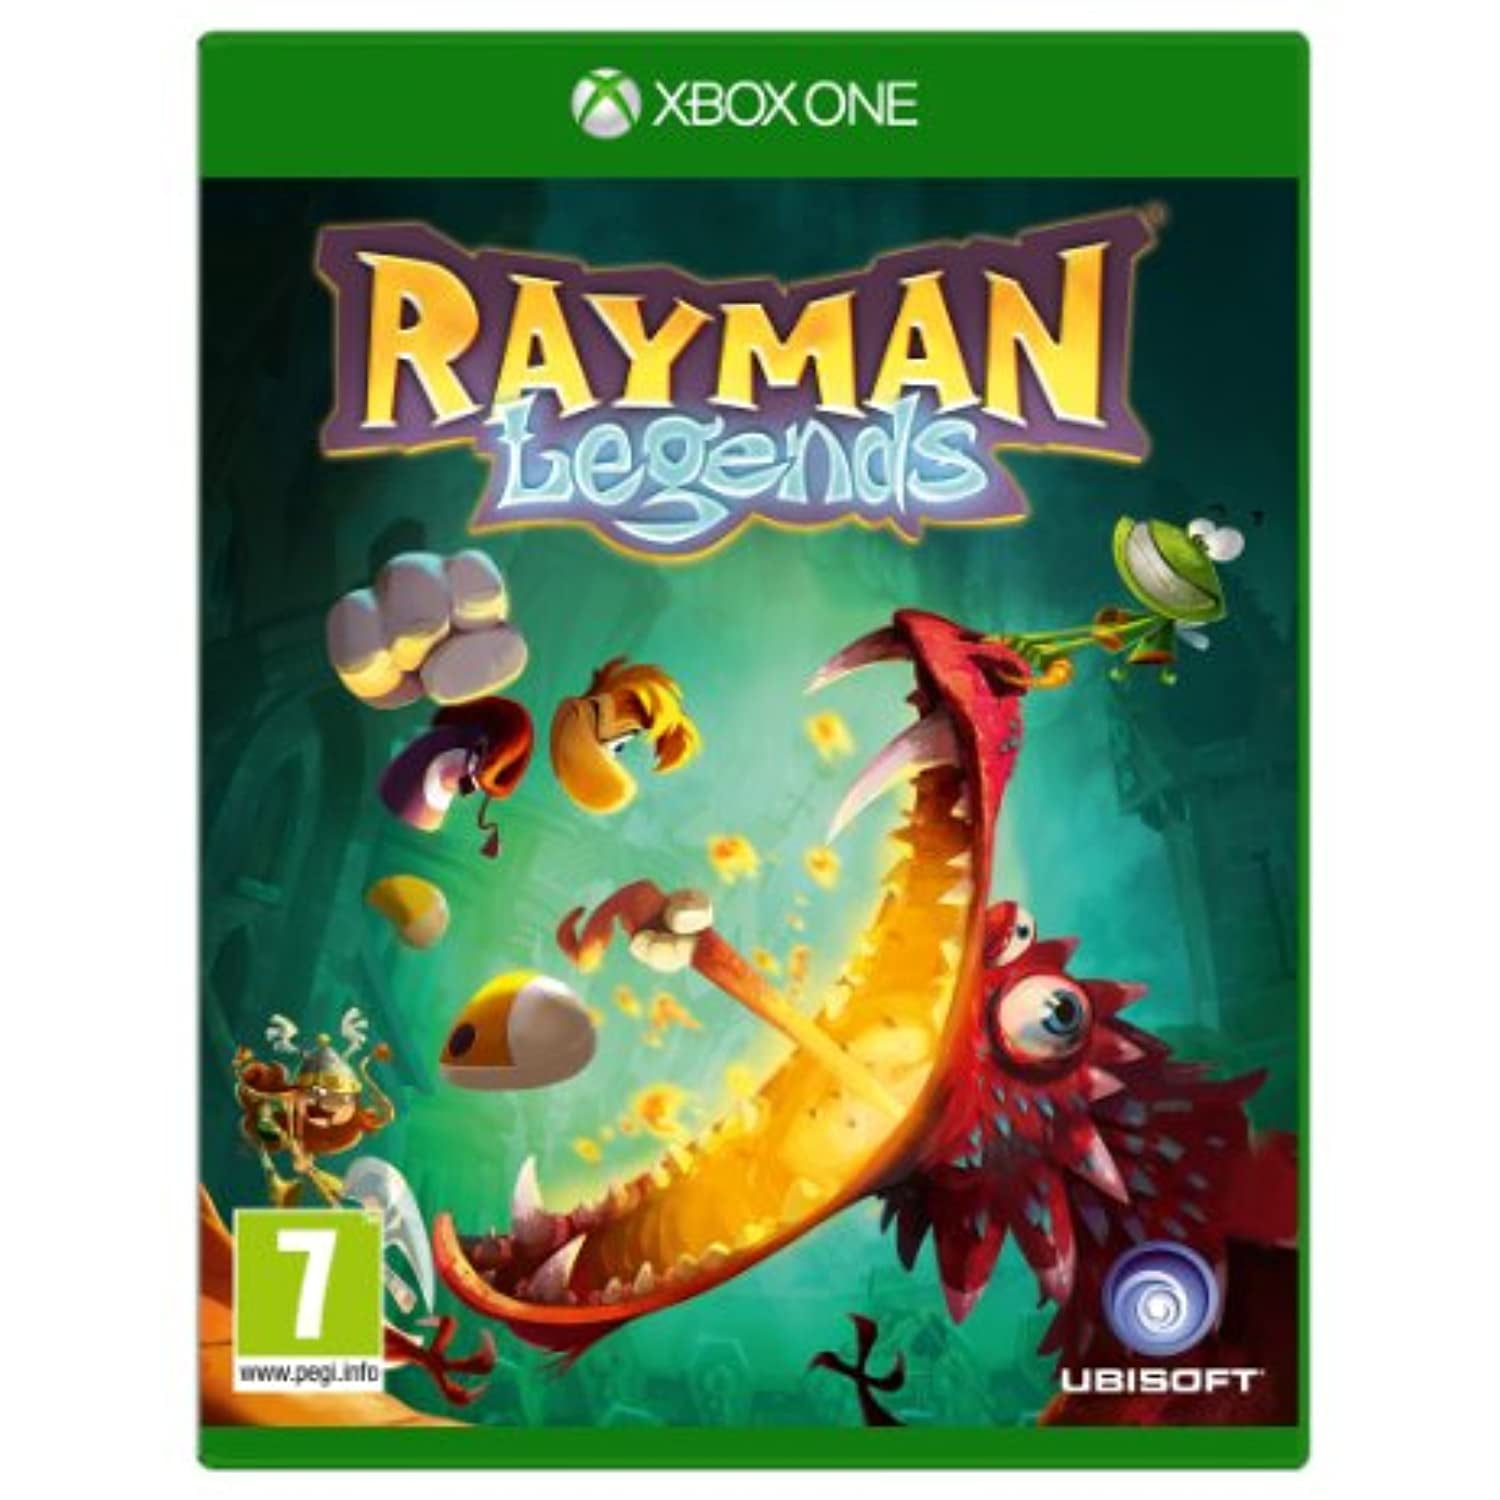 Buy Rayman® Legends - Microsoft Store en-GR